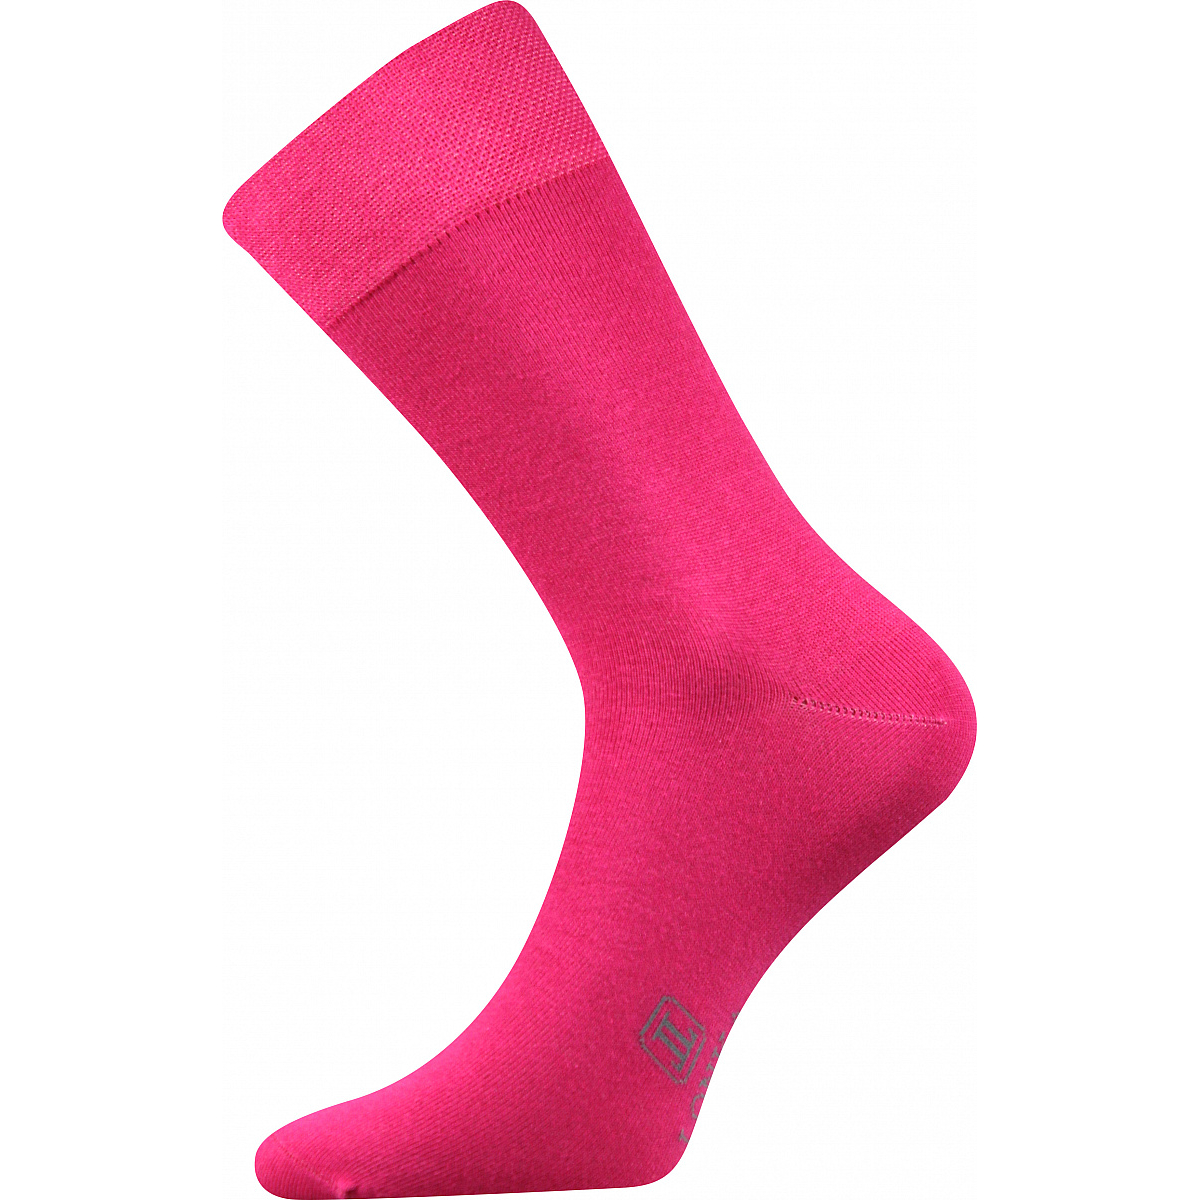 Ponožky pánské Lonka Decolor - tmavě růžové, 39-42